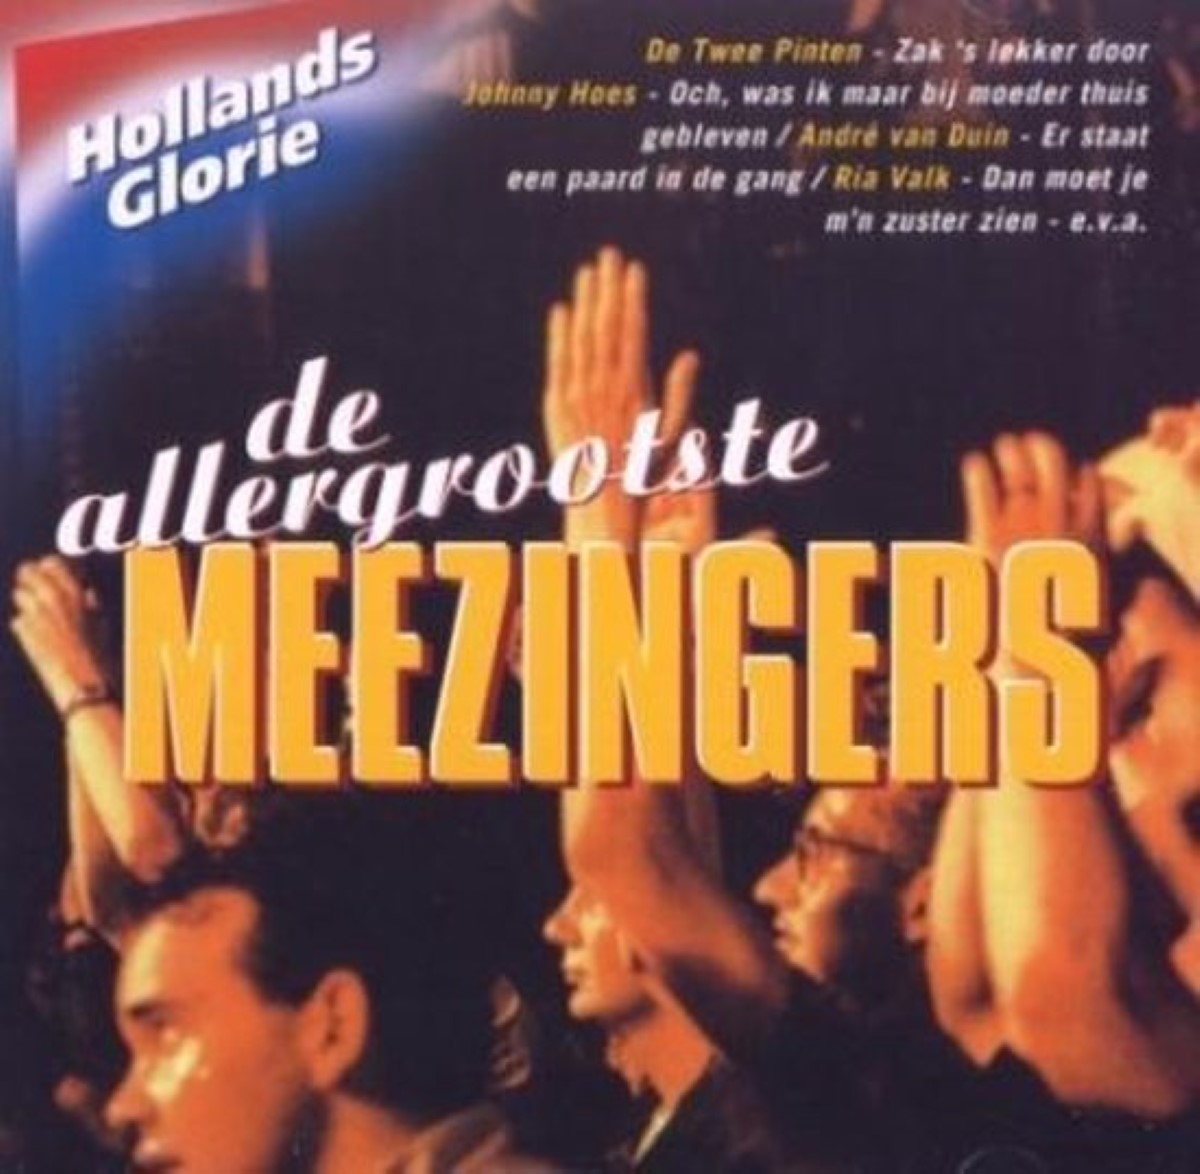 Hollands Glorie - De Allergrootste Meezingers (2002)